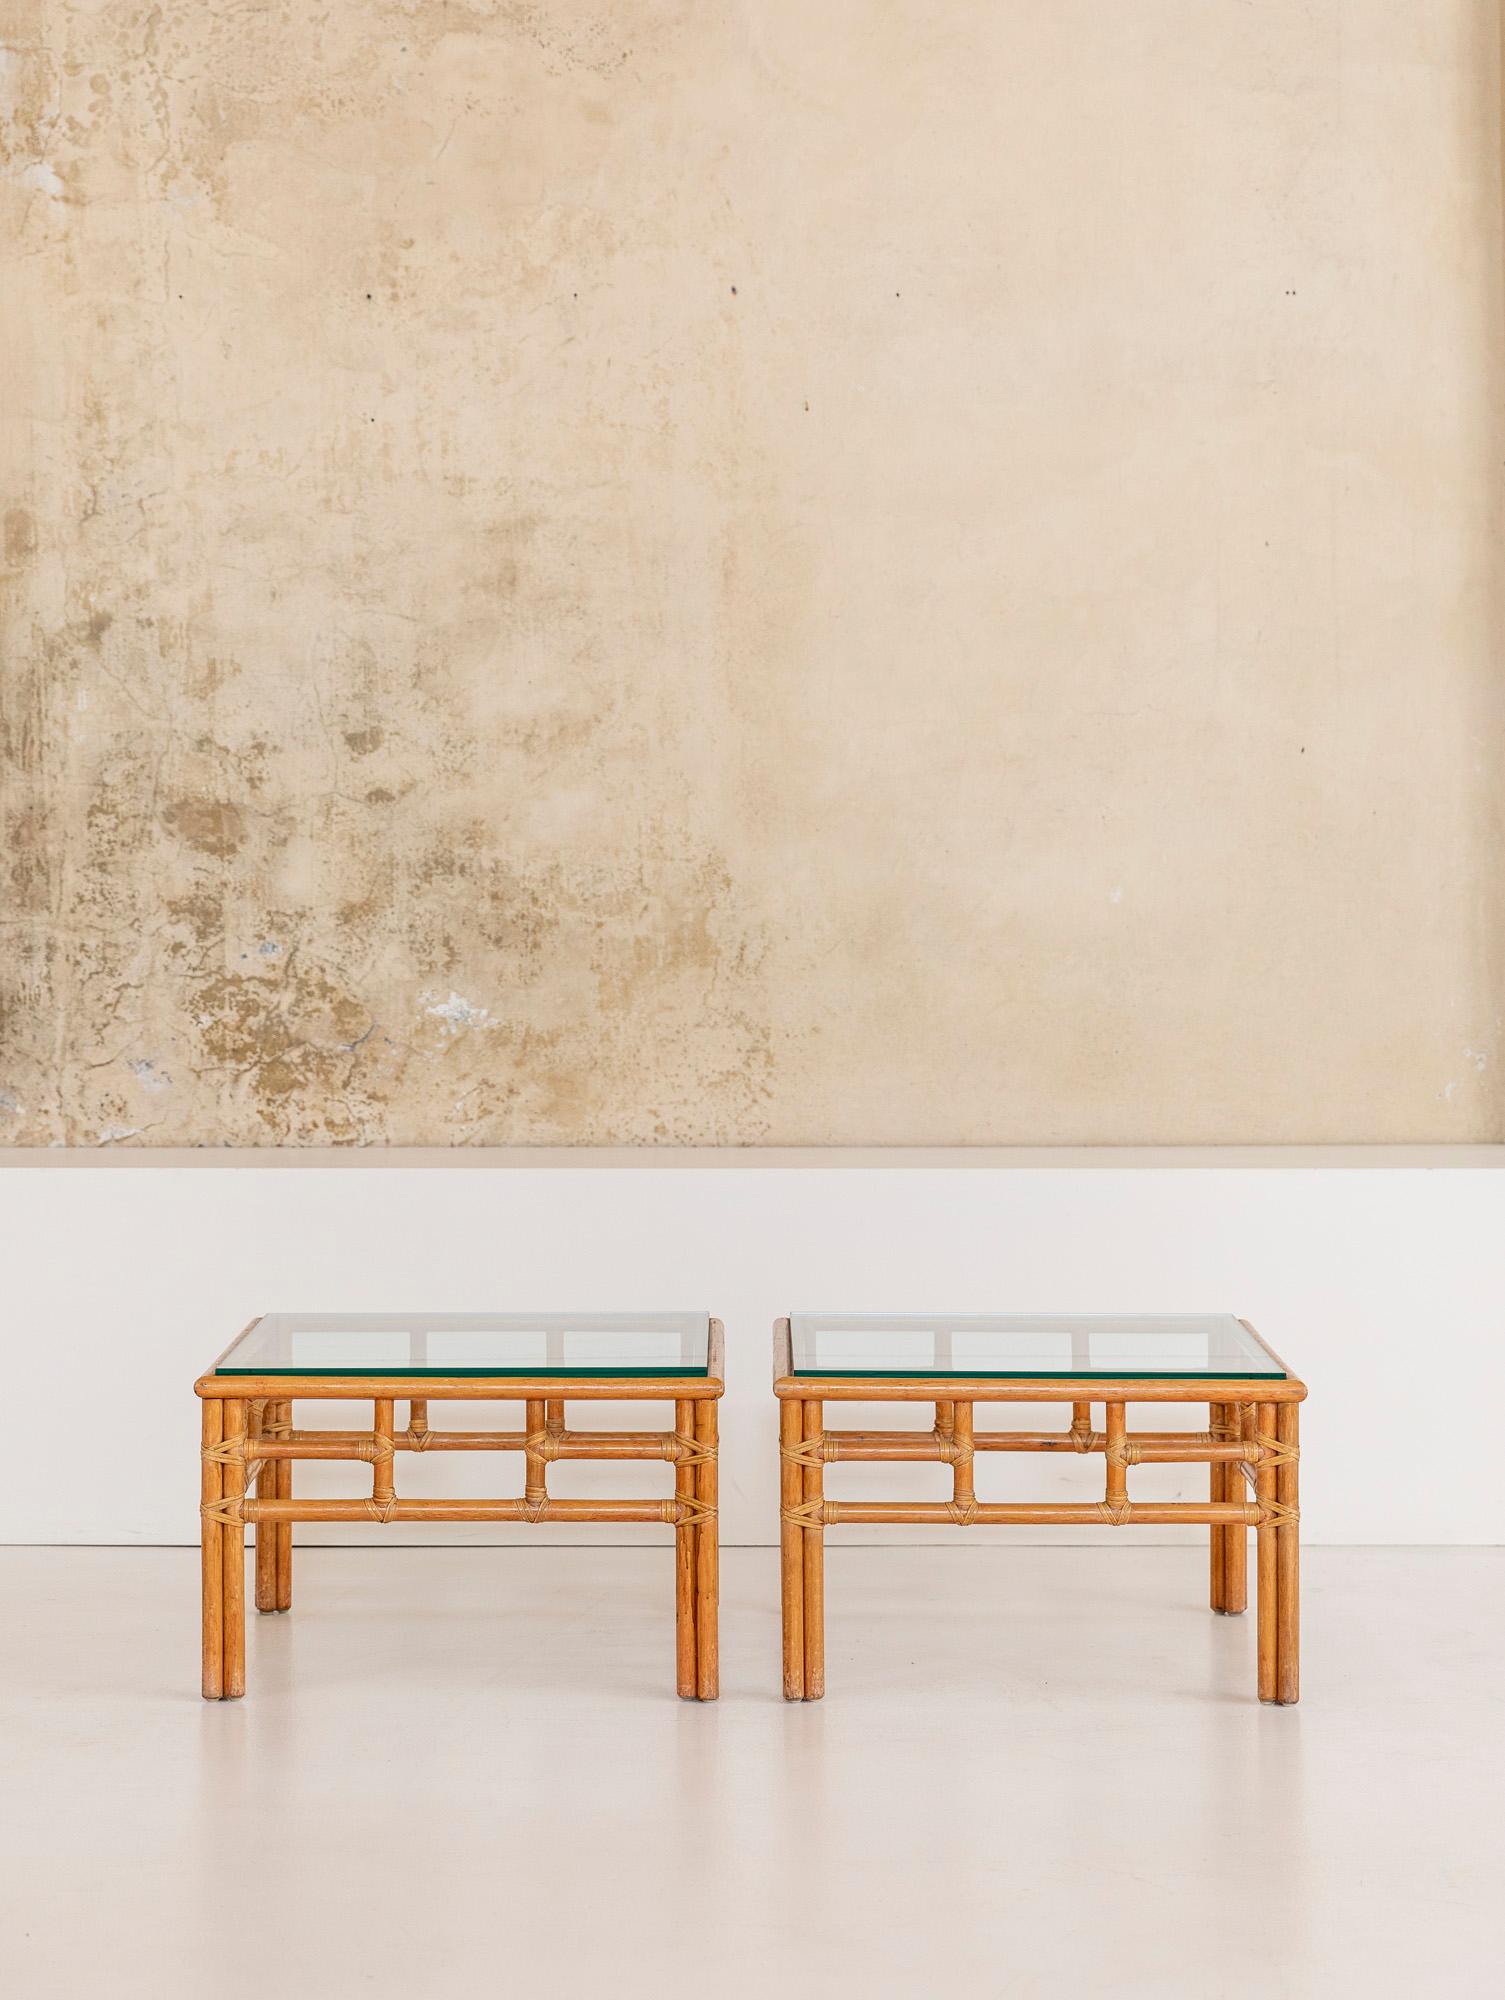 Atemberaubende kleine Couchtische aus Bambus mit original Glasplatte, diese schönen Stücke wurden von Lyda Levi's um 1970 entworfen
Diese Tische können mit dem gesamten Set, bestehend aus zwei Sofas, zwei Sesseln mit Hocker, einem Set von 10